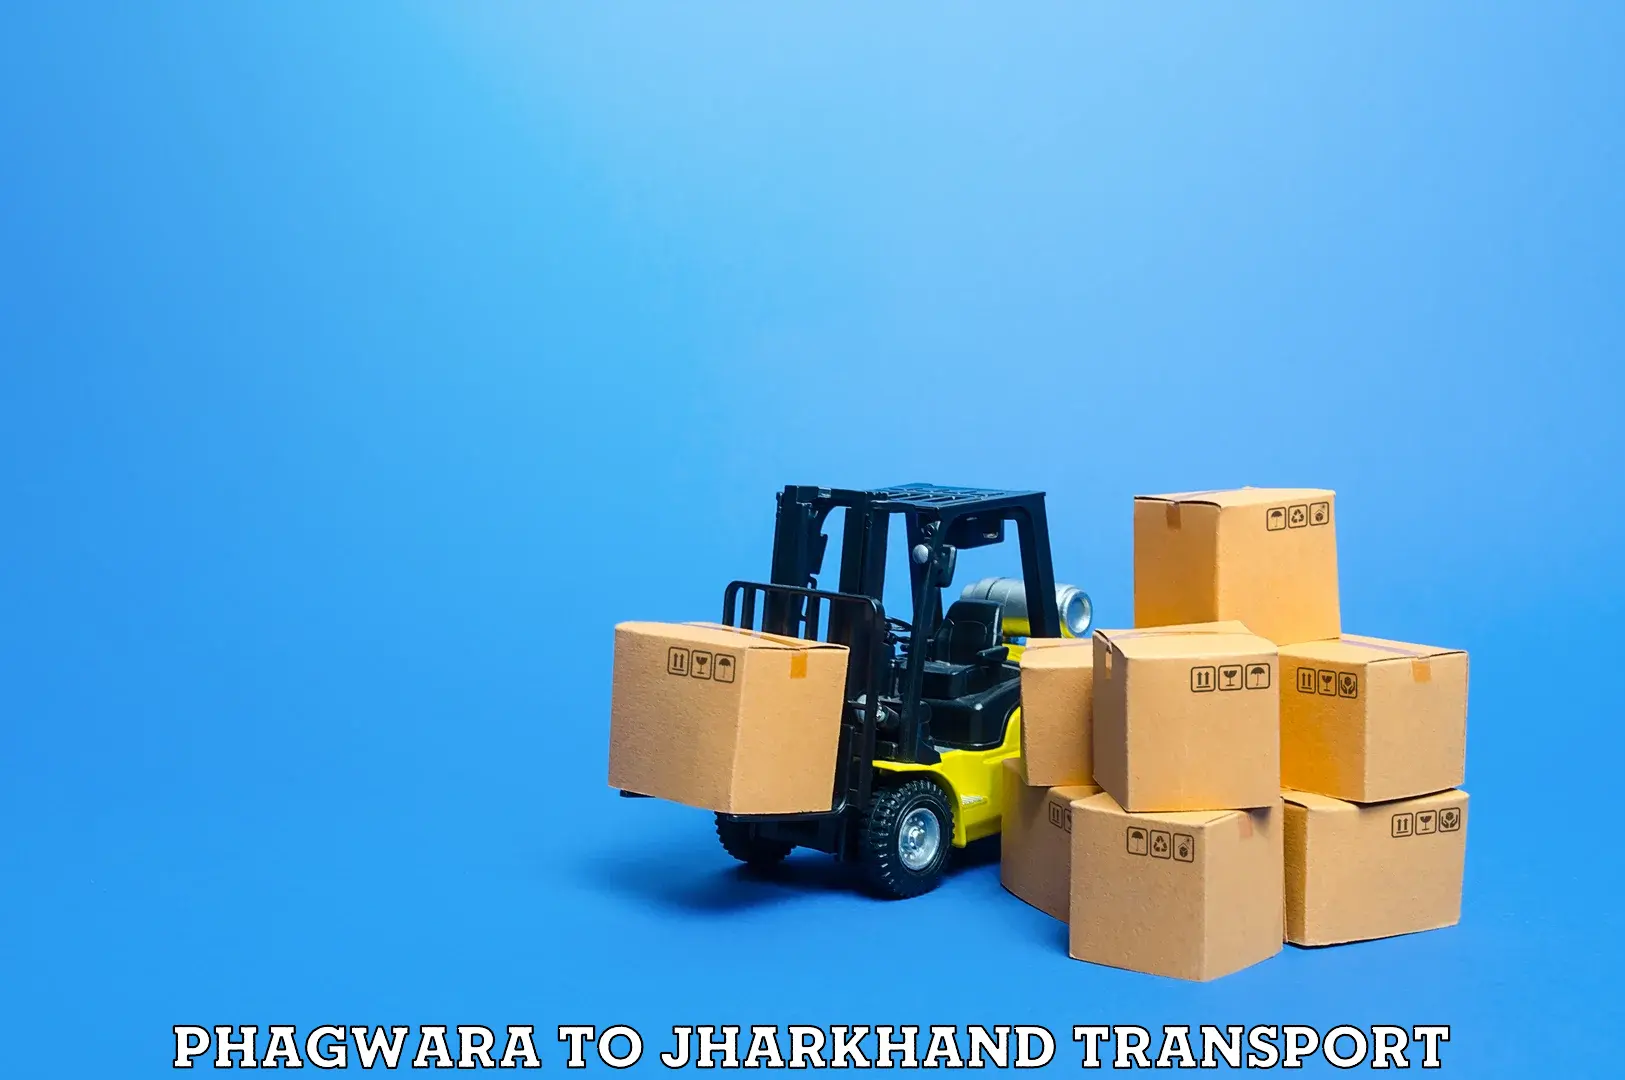 Nearby transport service Phagwara to Jharkhand